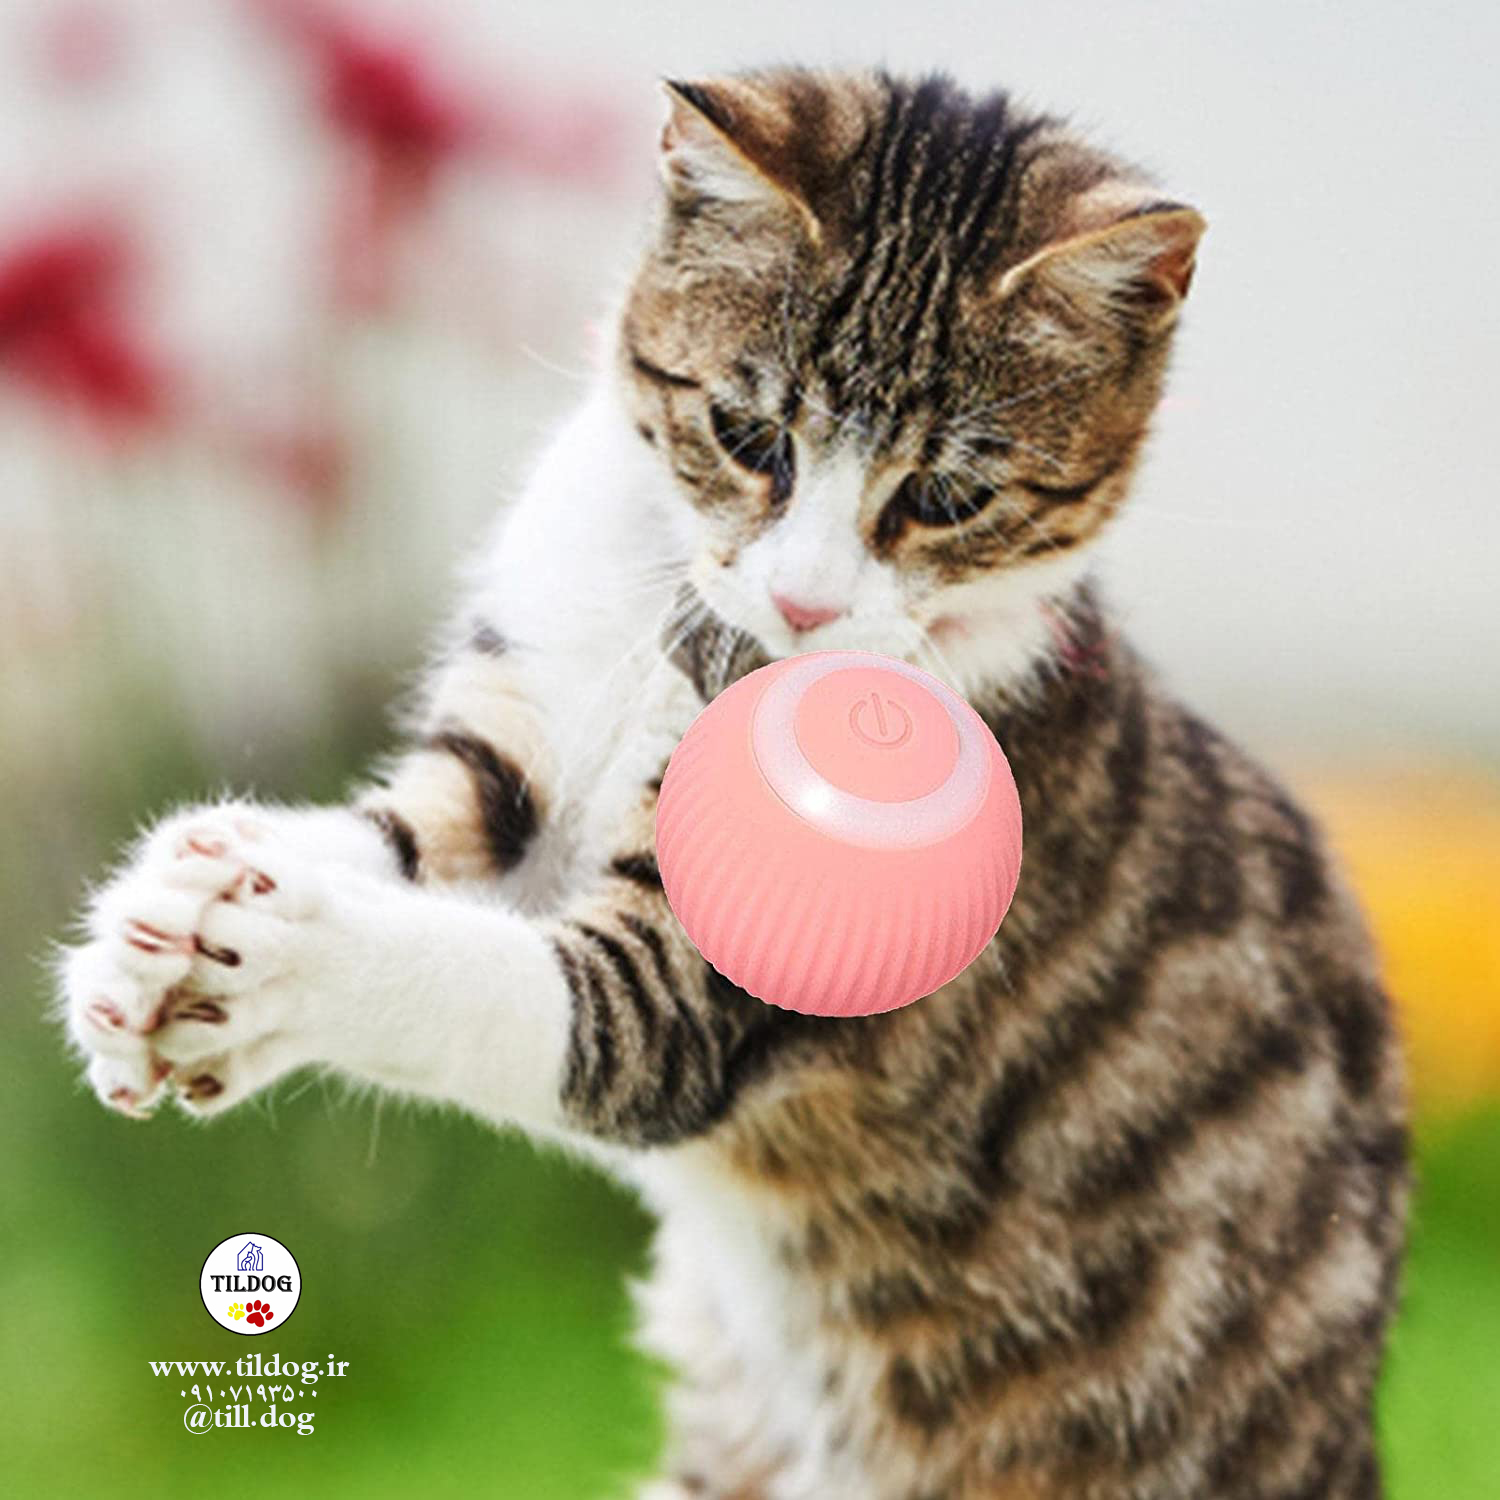 جذابیت زیادی برای گربه ها دارد و به گربه شما اجازه می دهد در حالی که هر روز اسباب بازی را تعقیب می کند ورزش کند و به حفظ سلامت گربه کمک می کند.